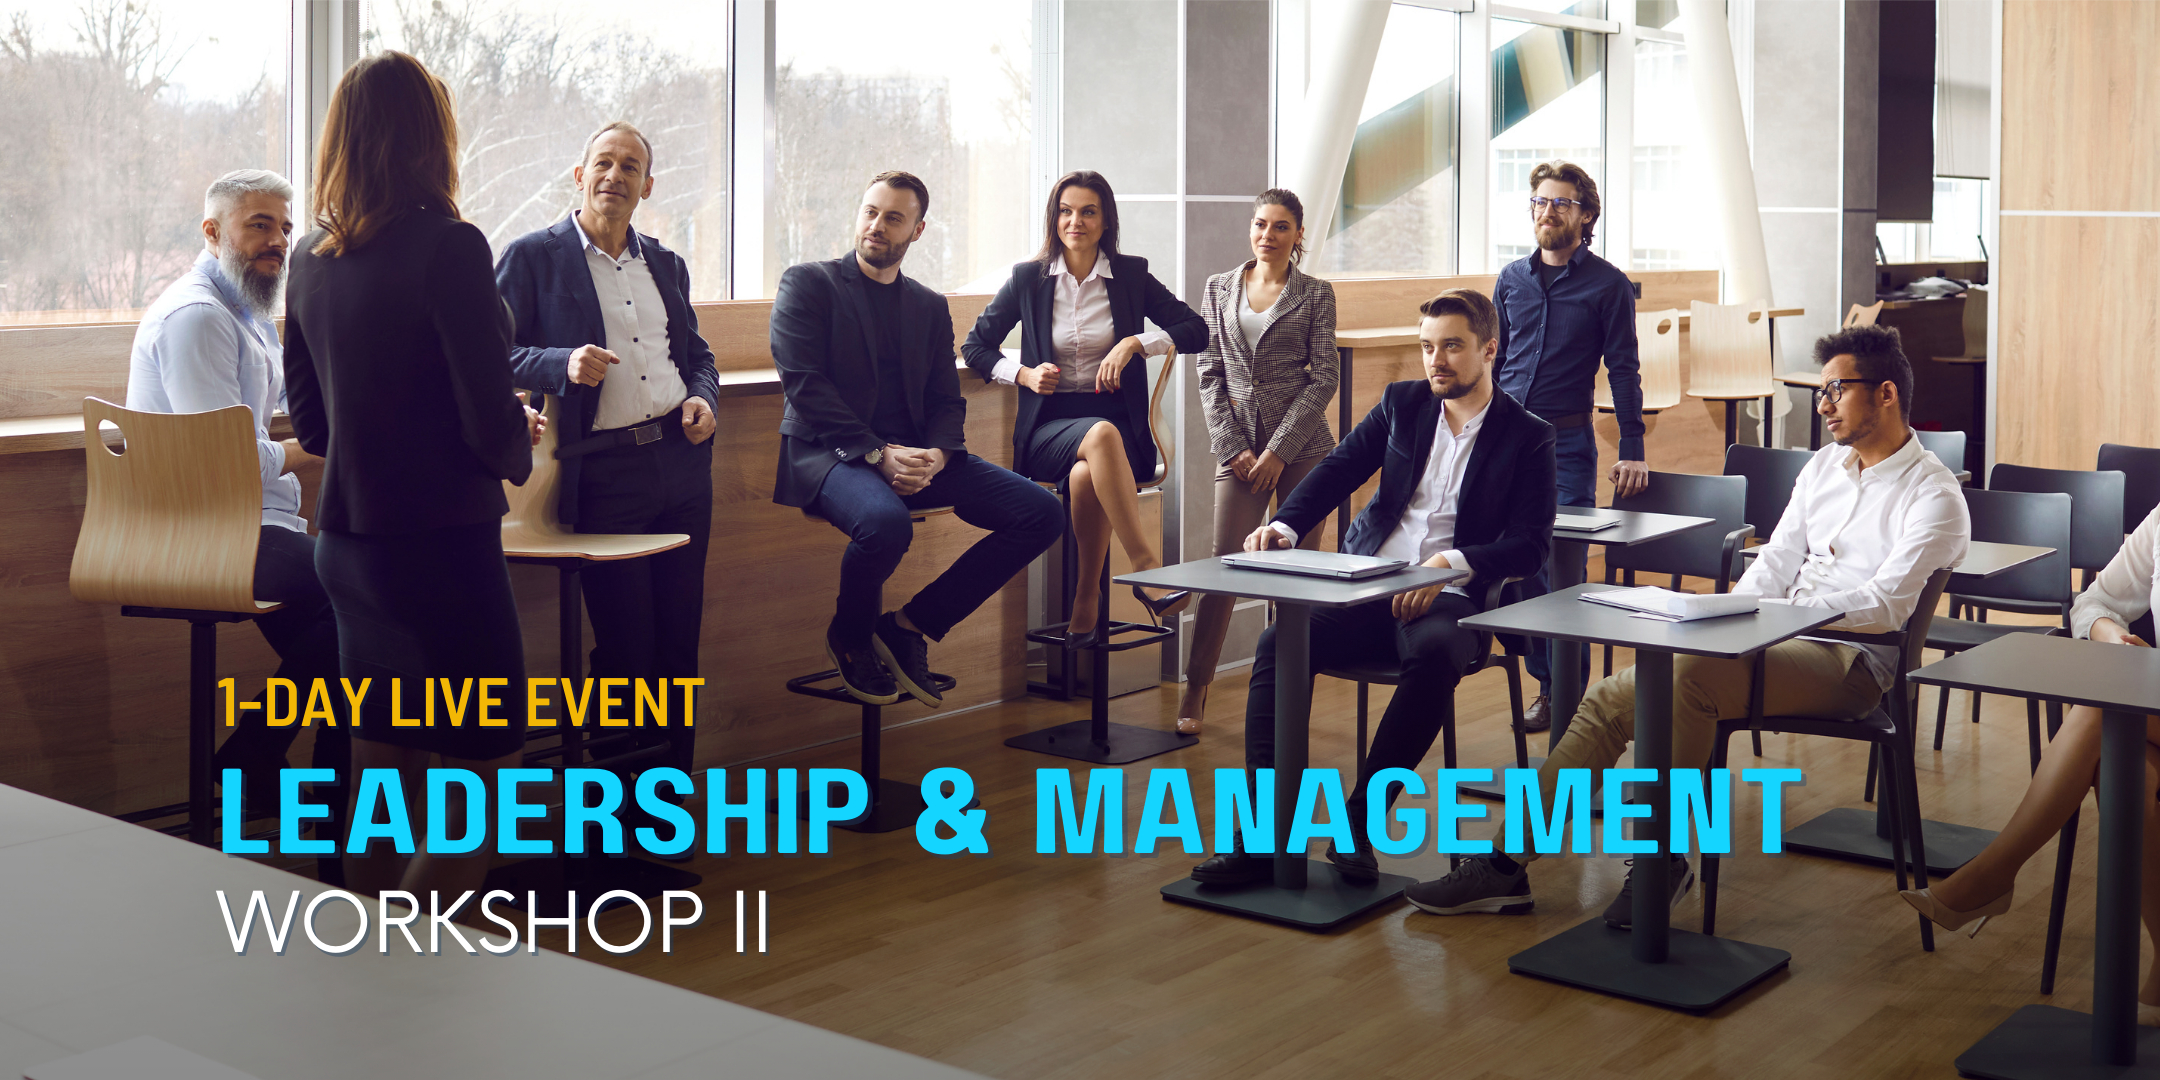 Leadership & Management Workshop II